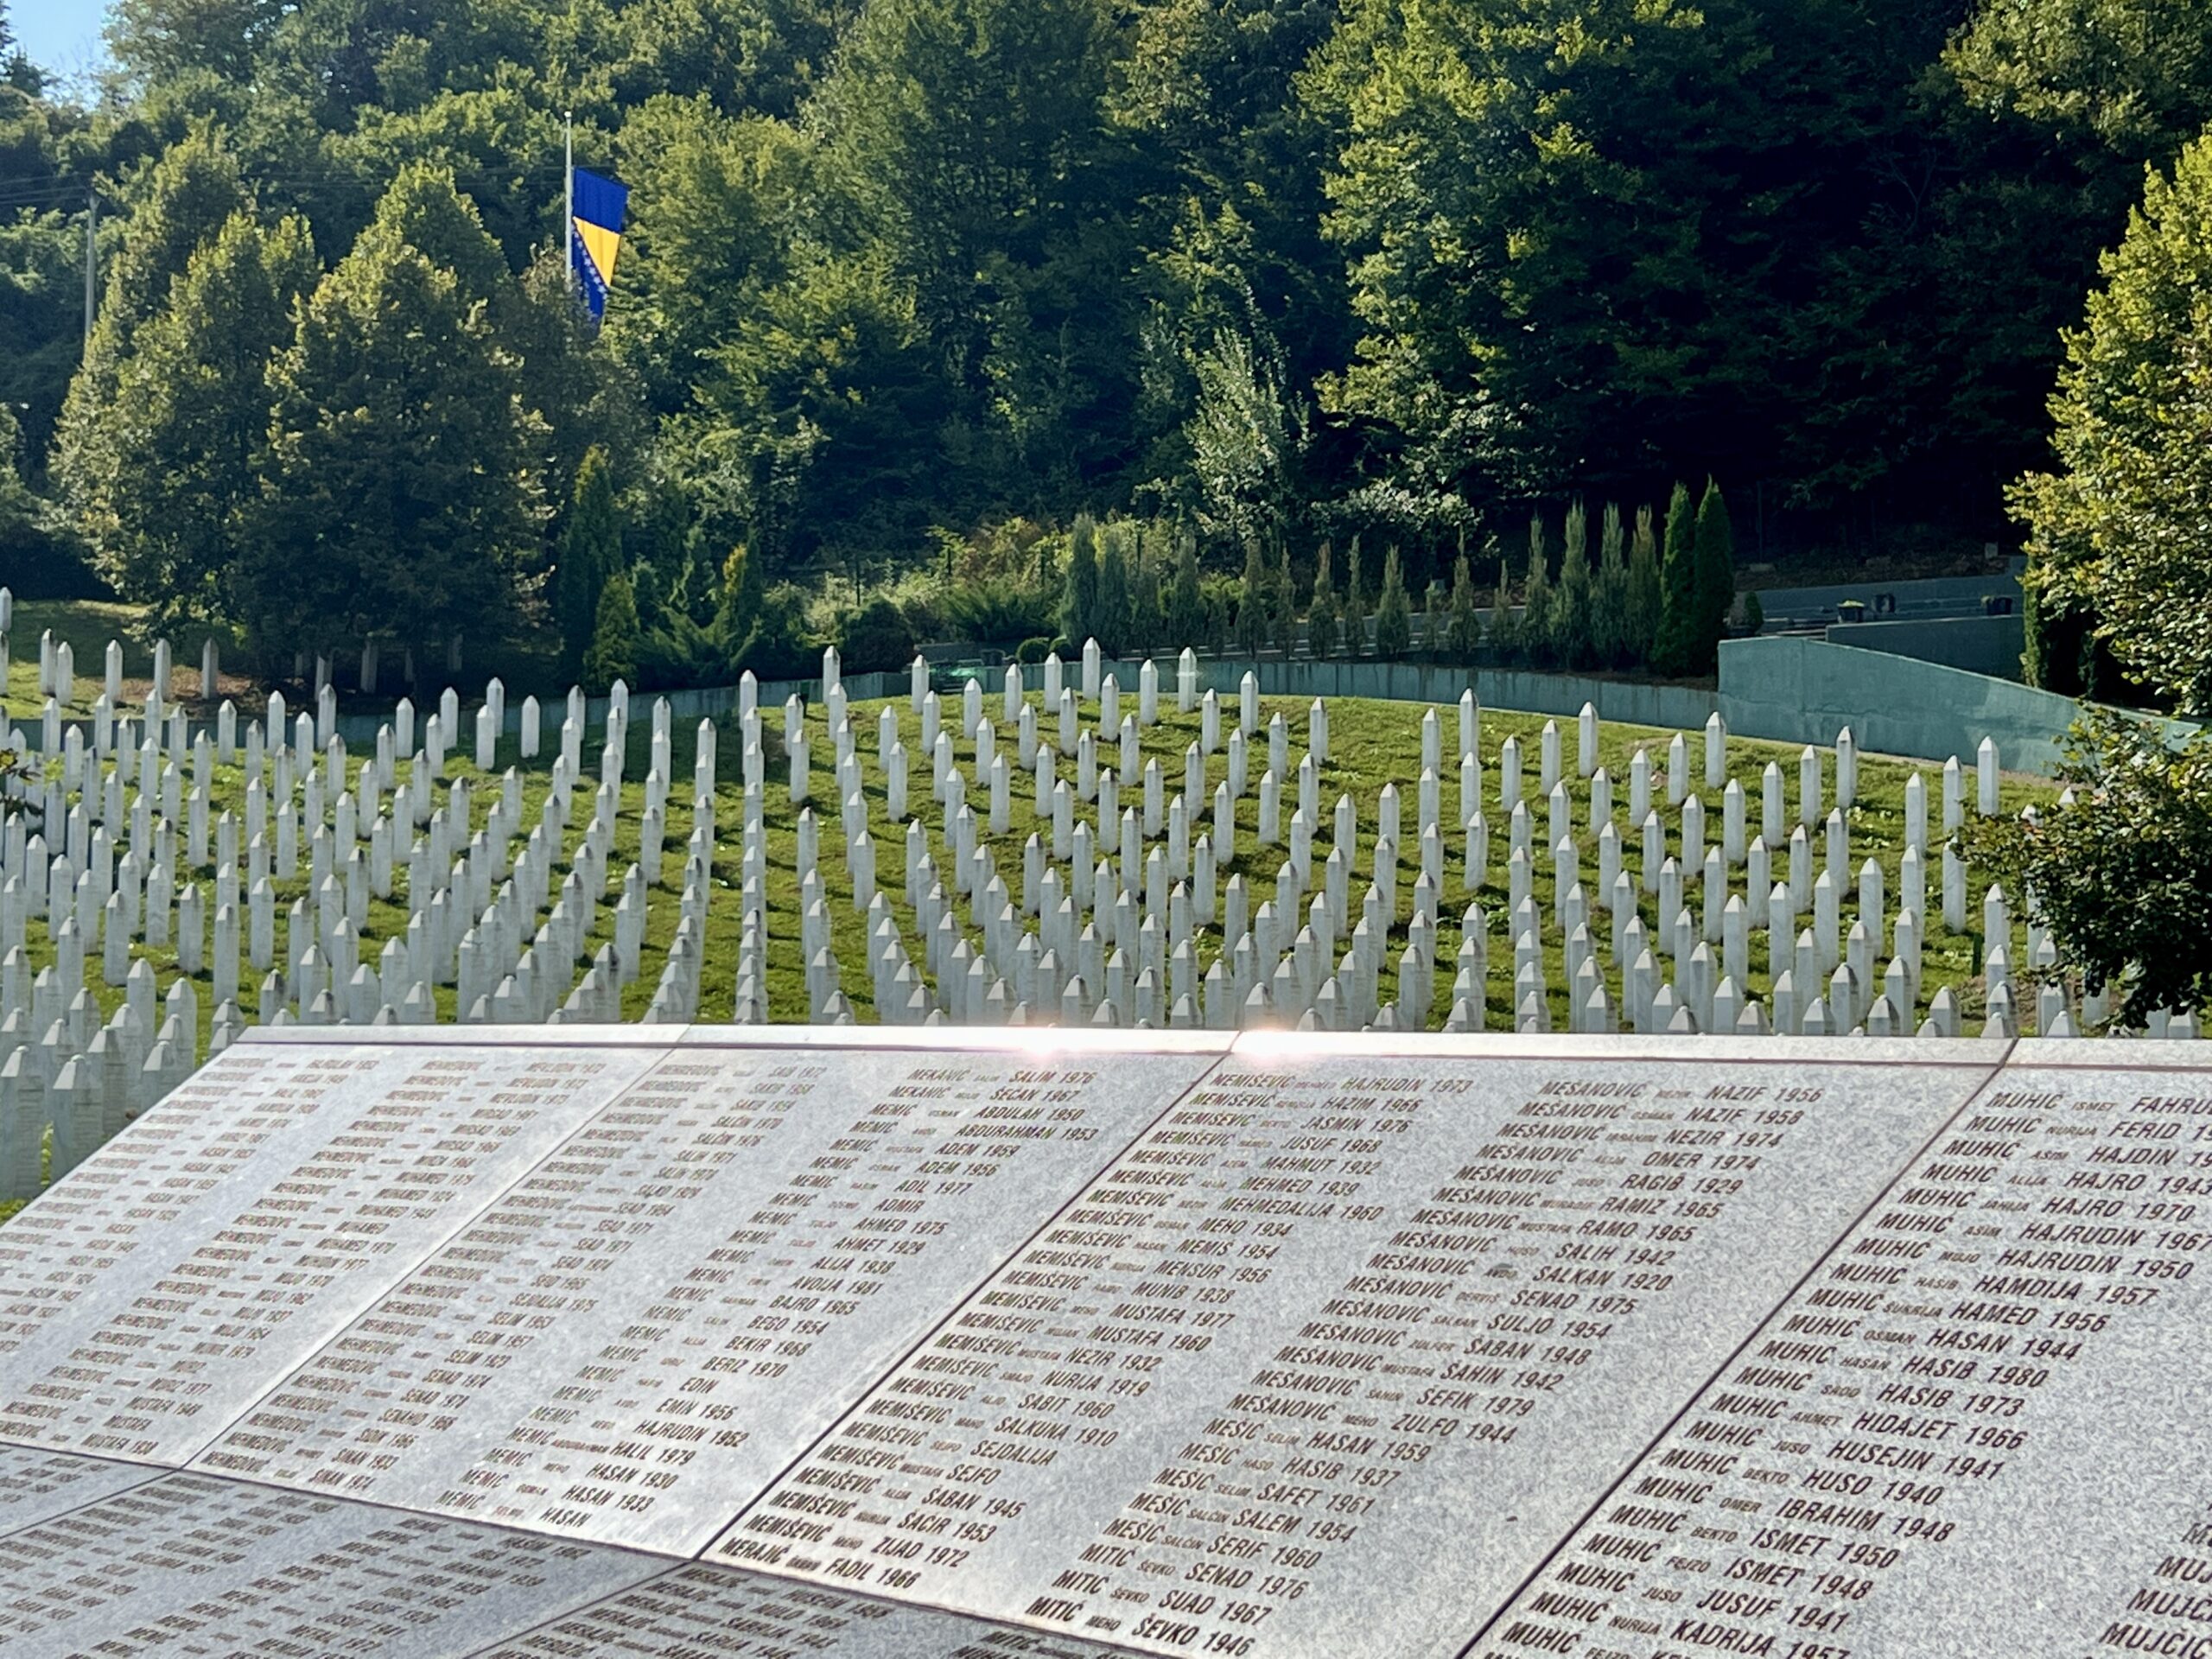 Srebrenica Potočari Memorial - Bosnia & Herzegovina